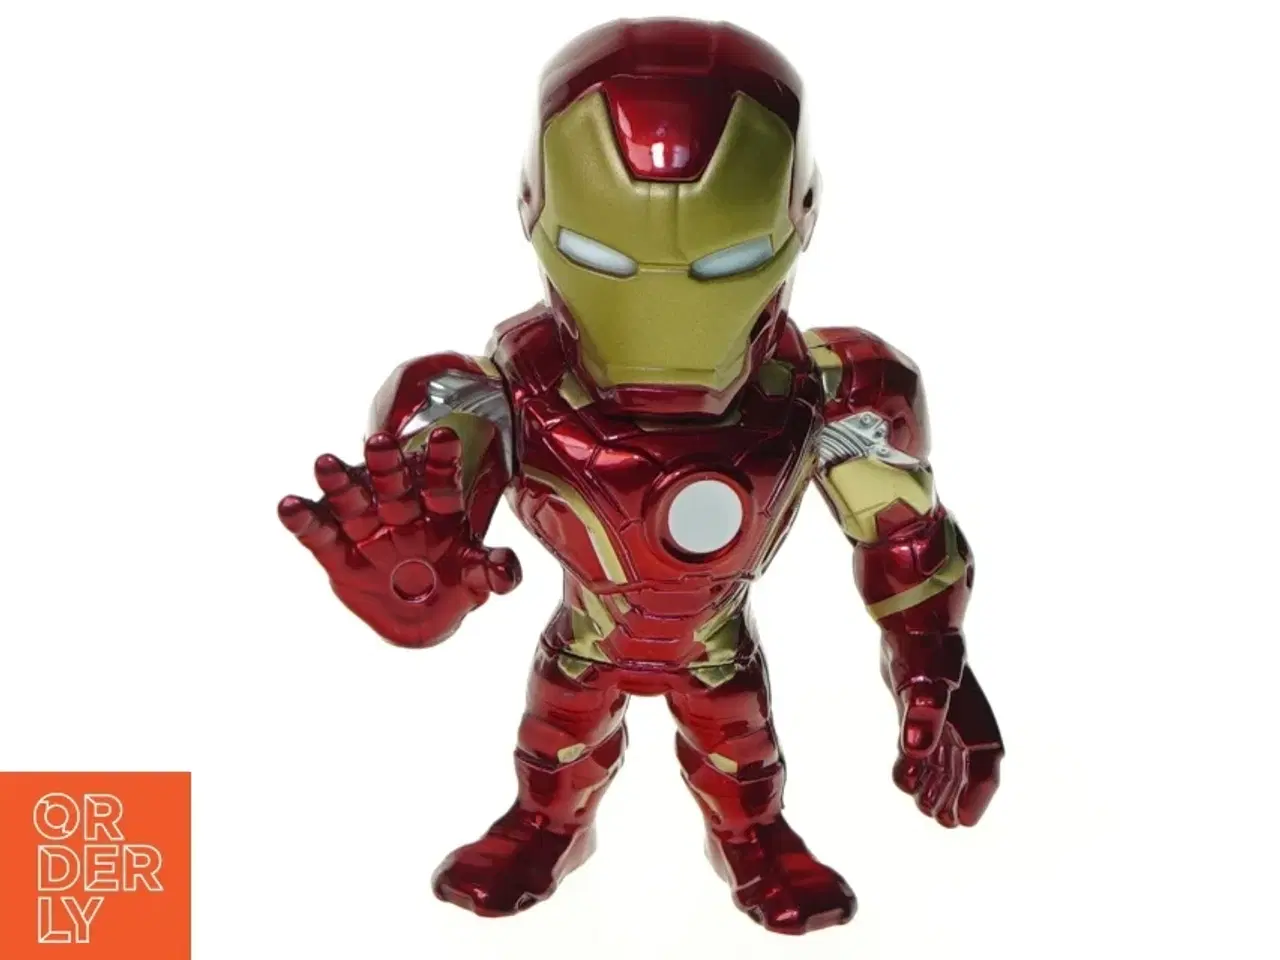 Billede 1 - Iron man figur fra Marvel (str. 10 x 8 cm)